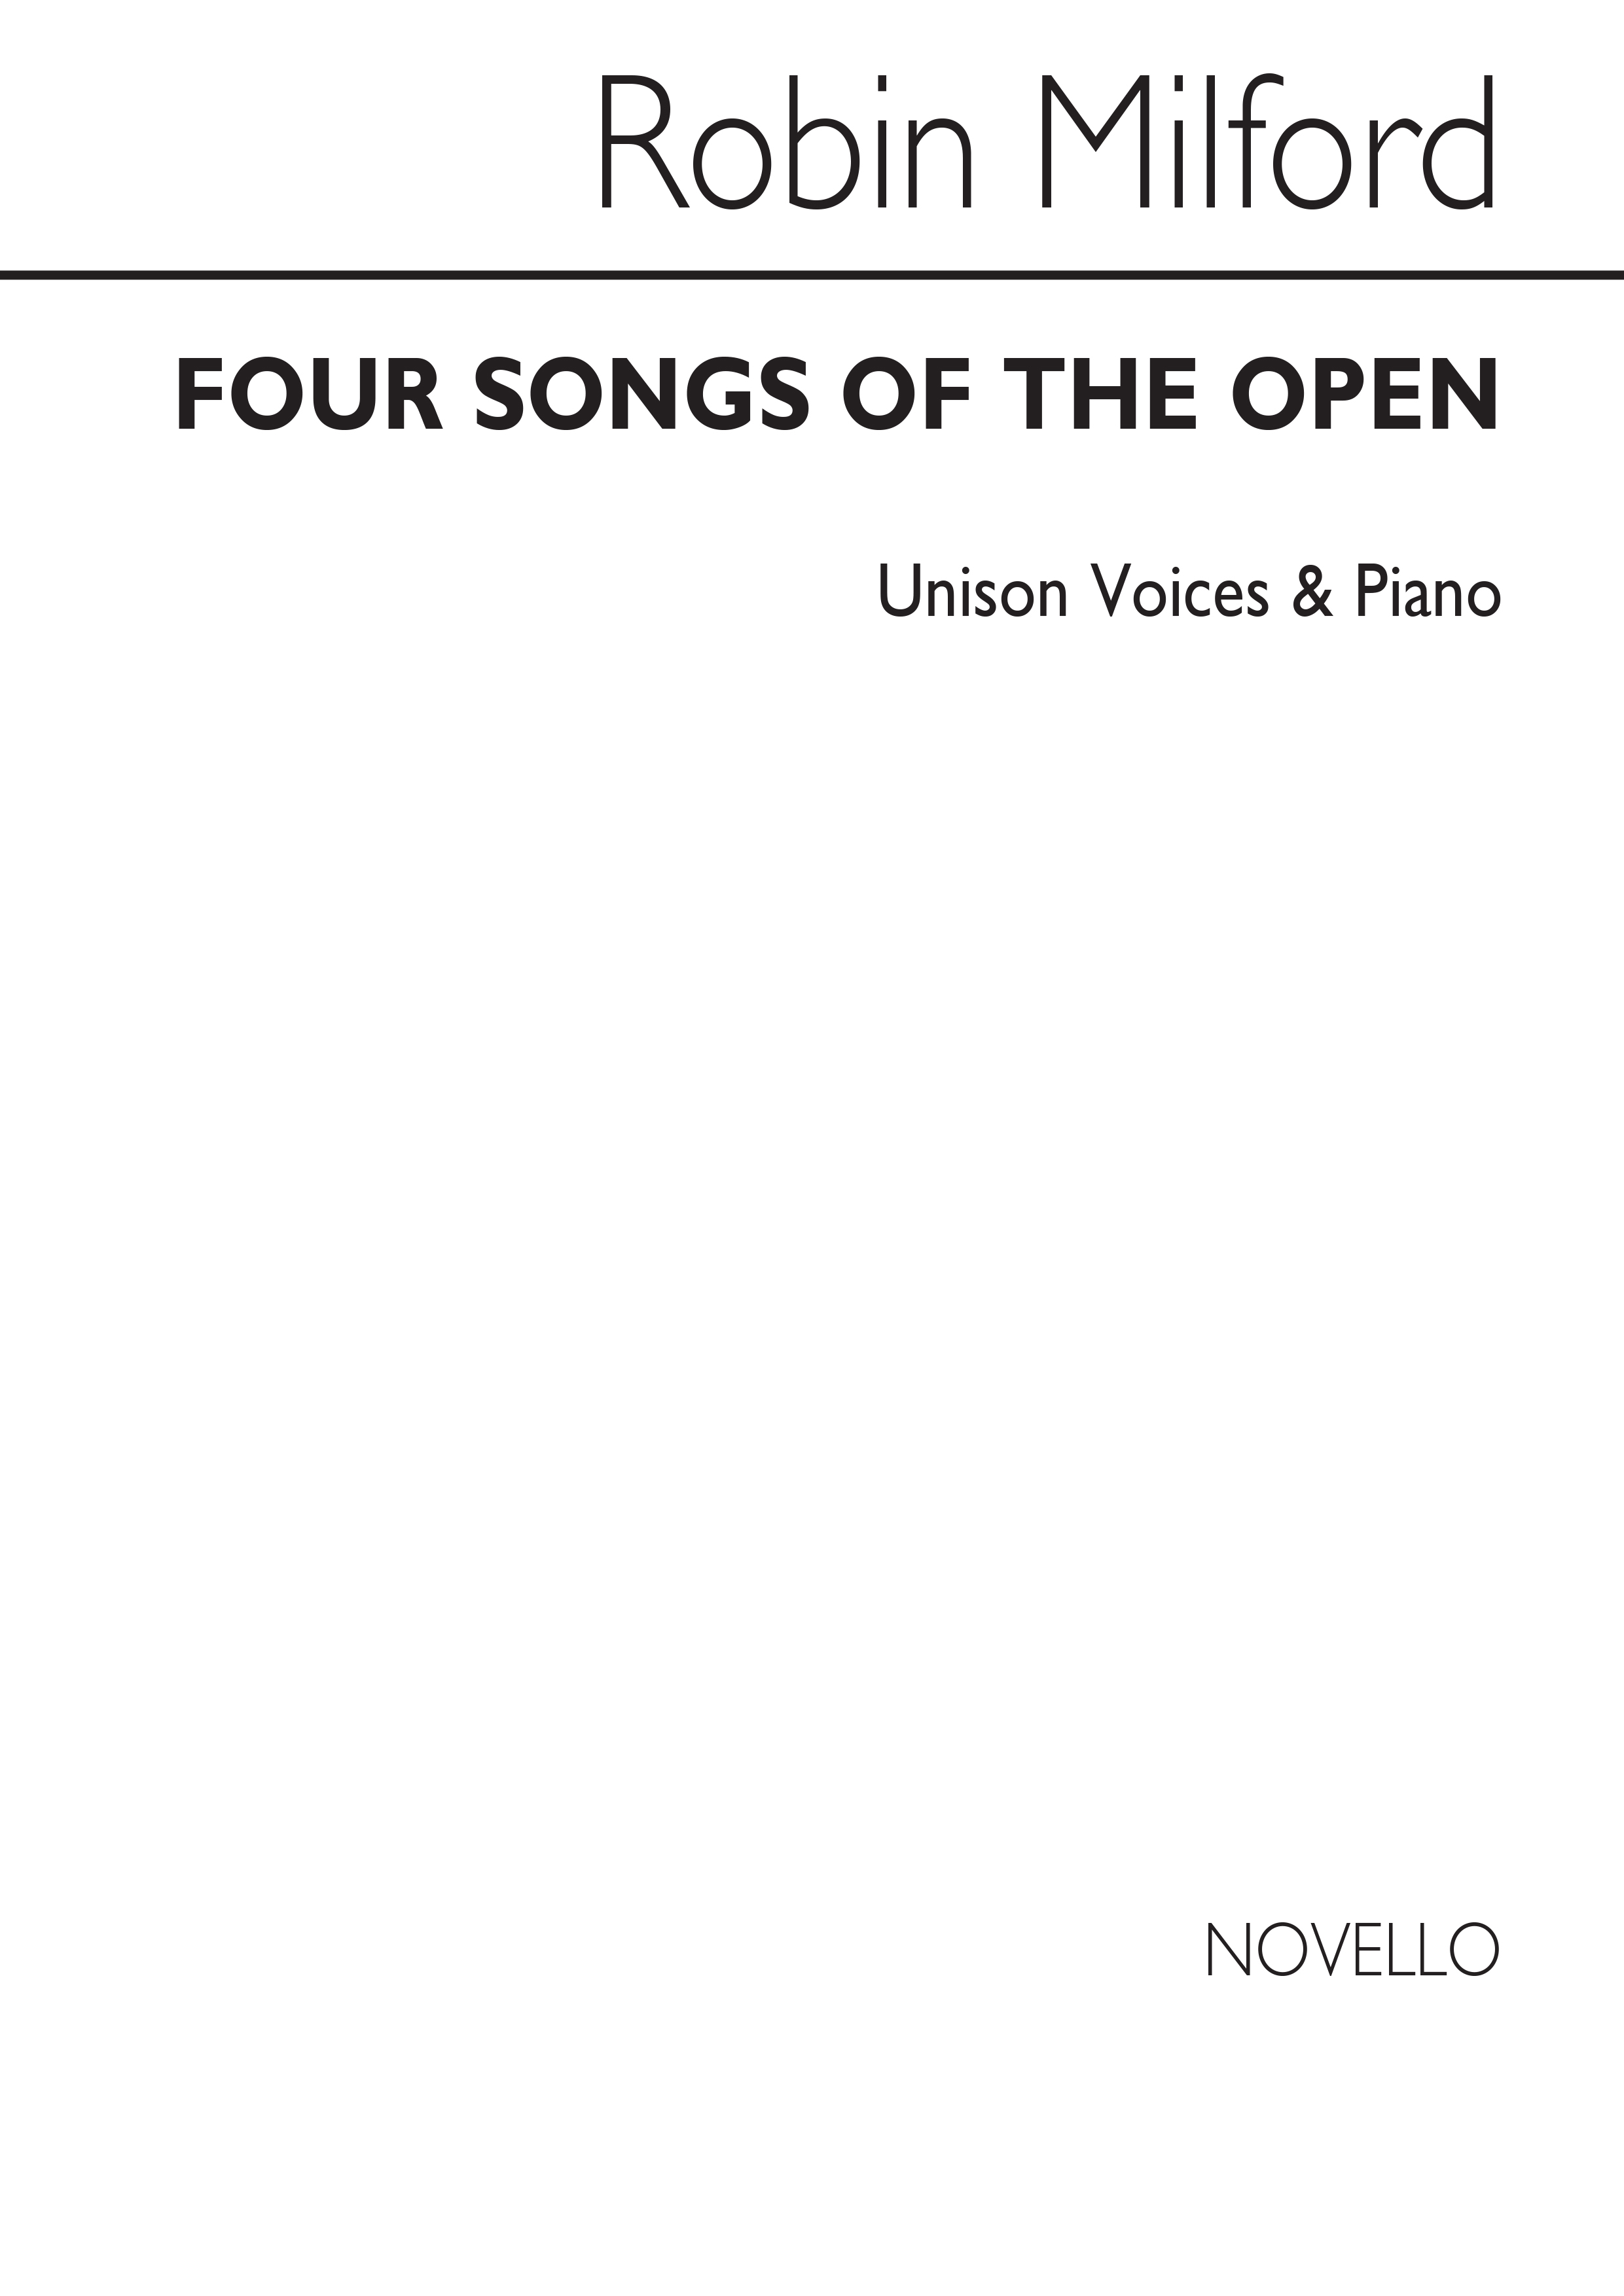 Robin Milford: Coridon's Song Op45 No.4 Unison/Piano